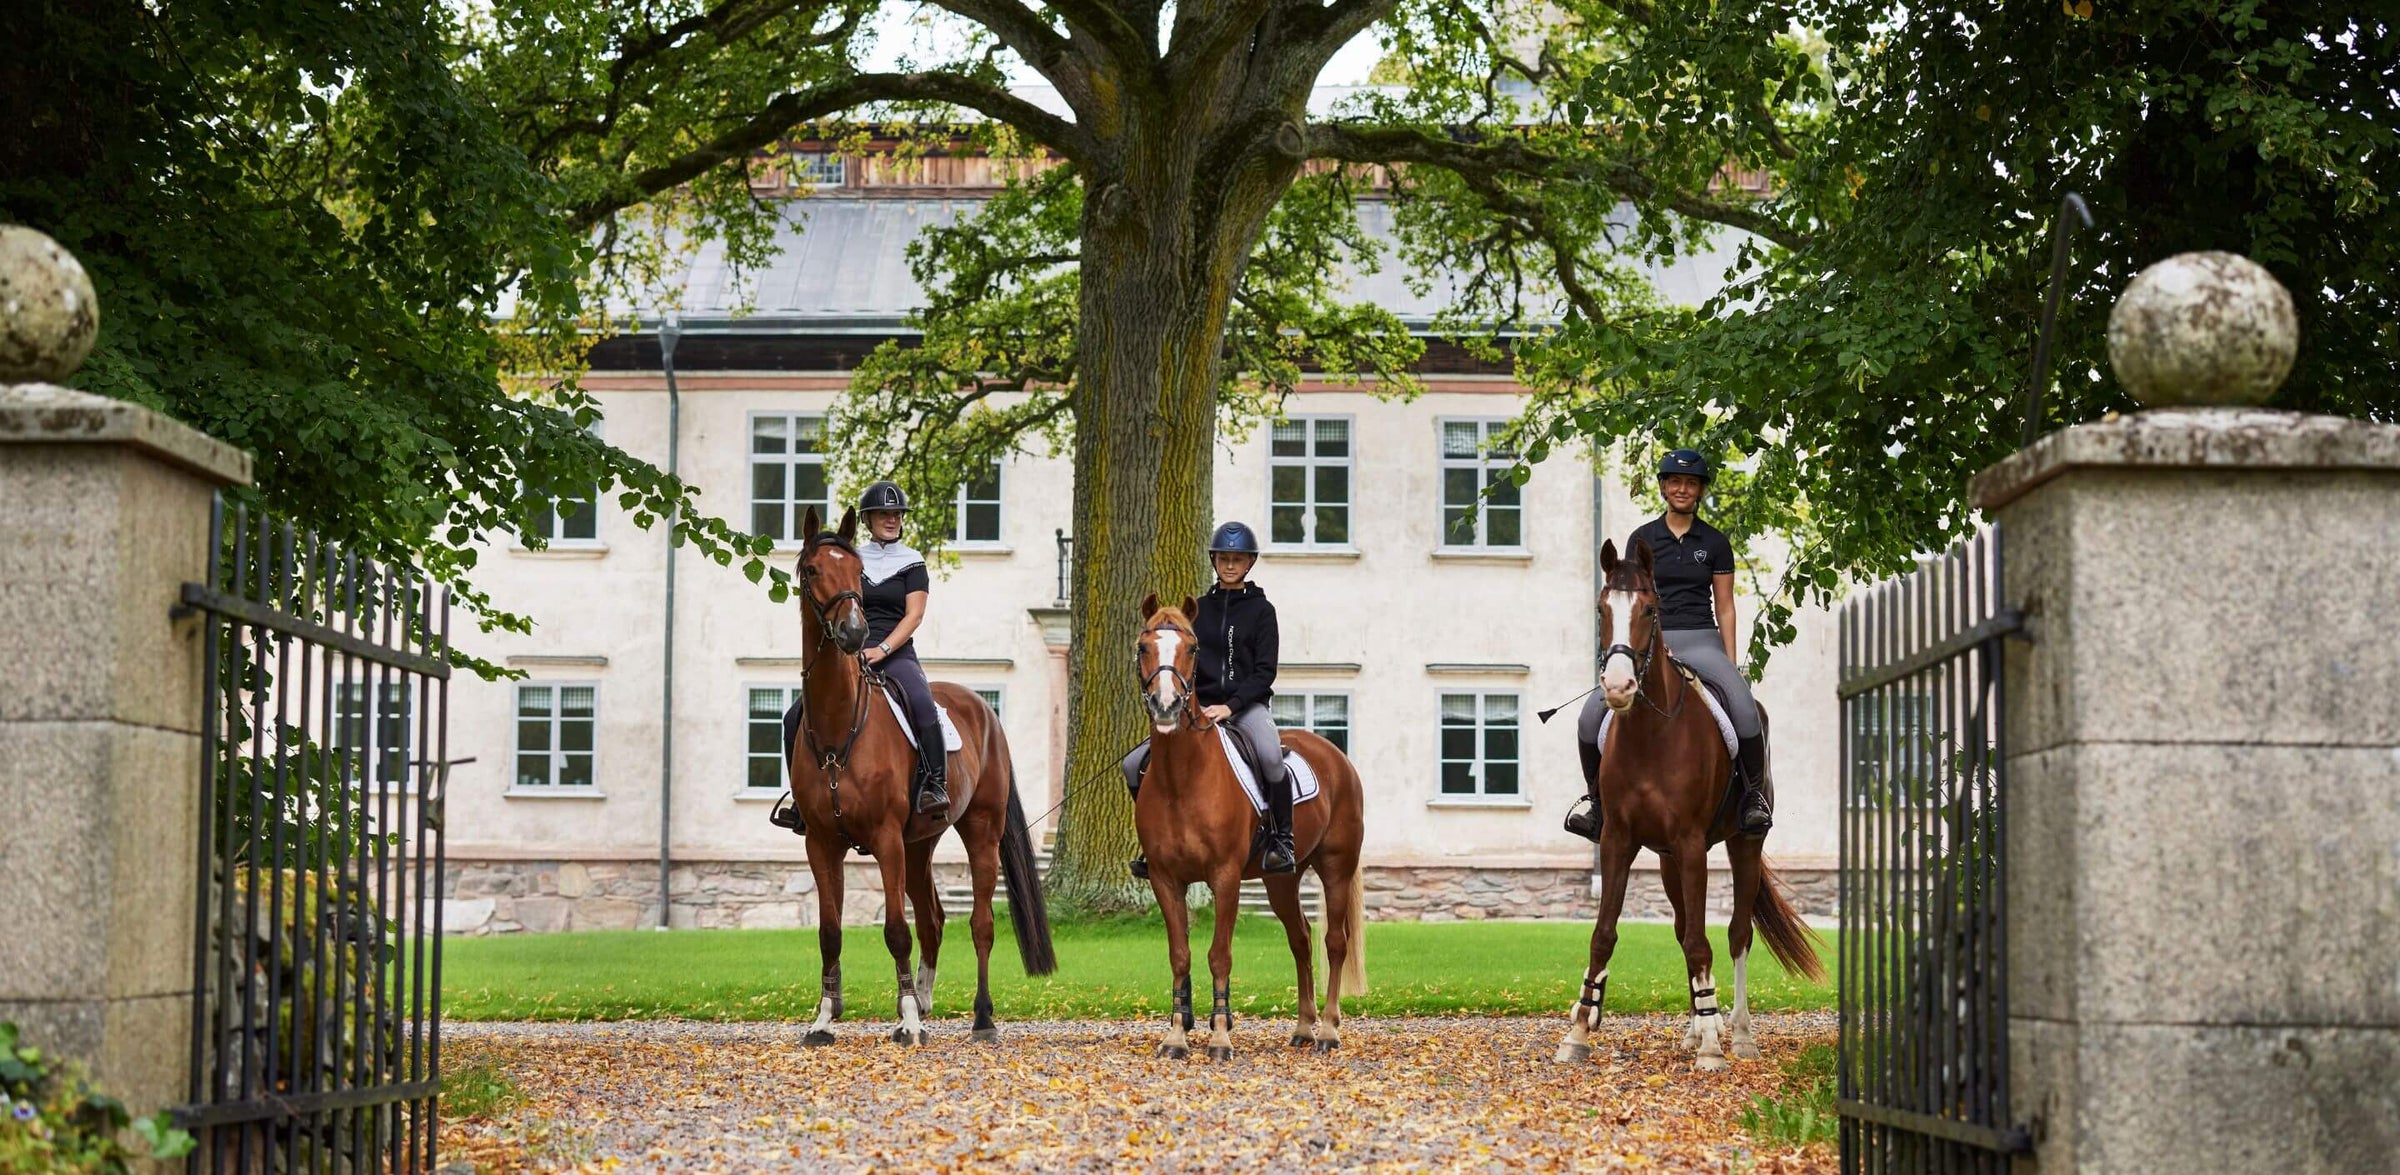 Umweltbild drei Reiter in Noomi Chantelle Reitkleidung jeder auf einem braunen Pferd in einer schönen Villa